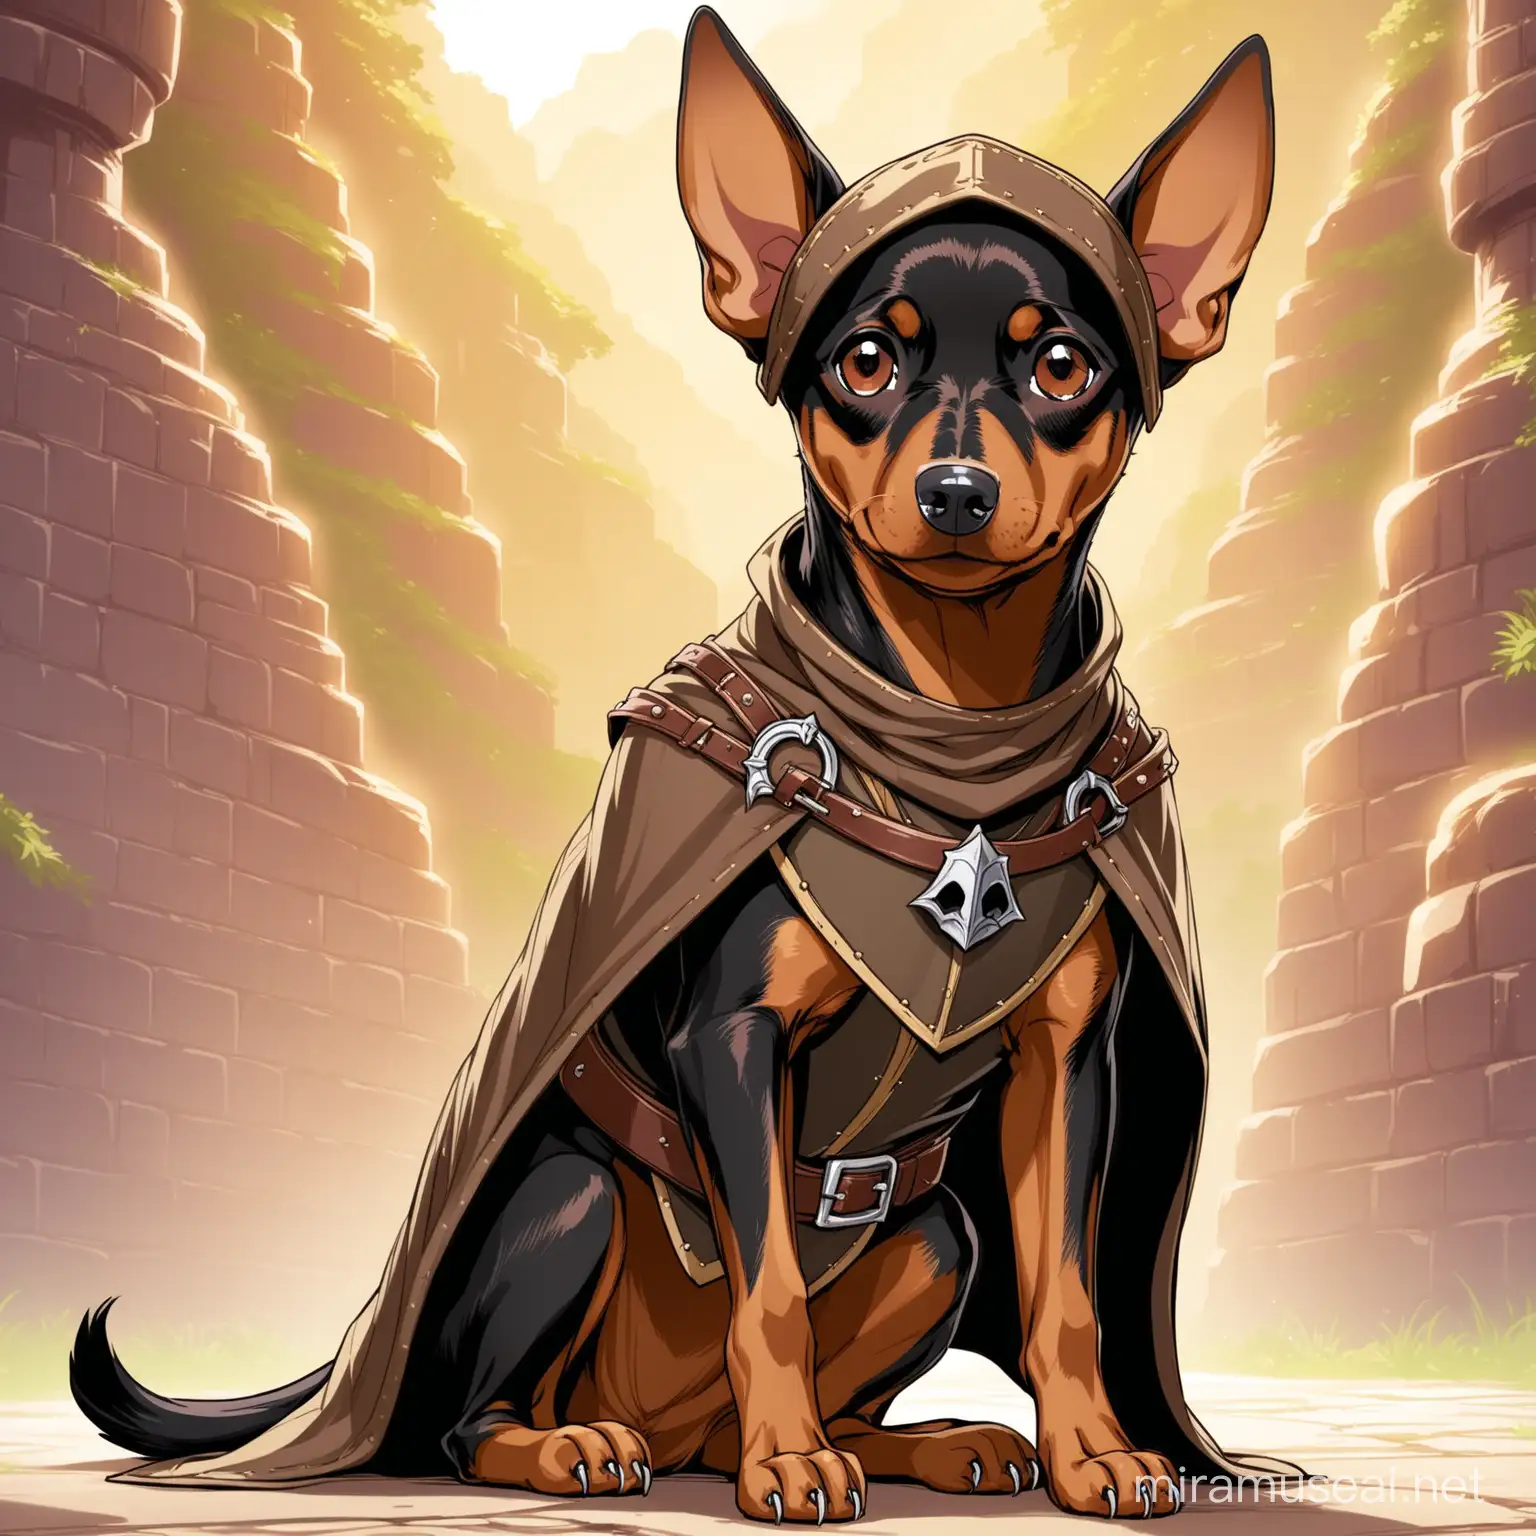 Brown Pinscher Dog Dressed as a DnD Rogue